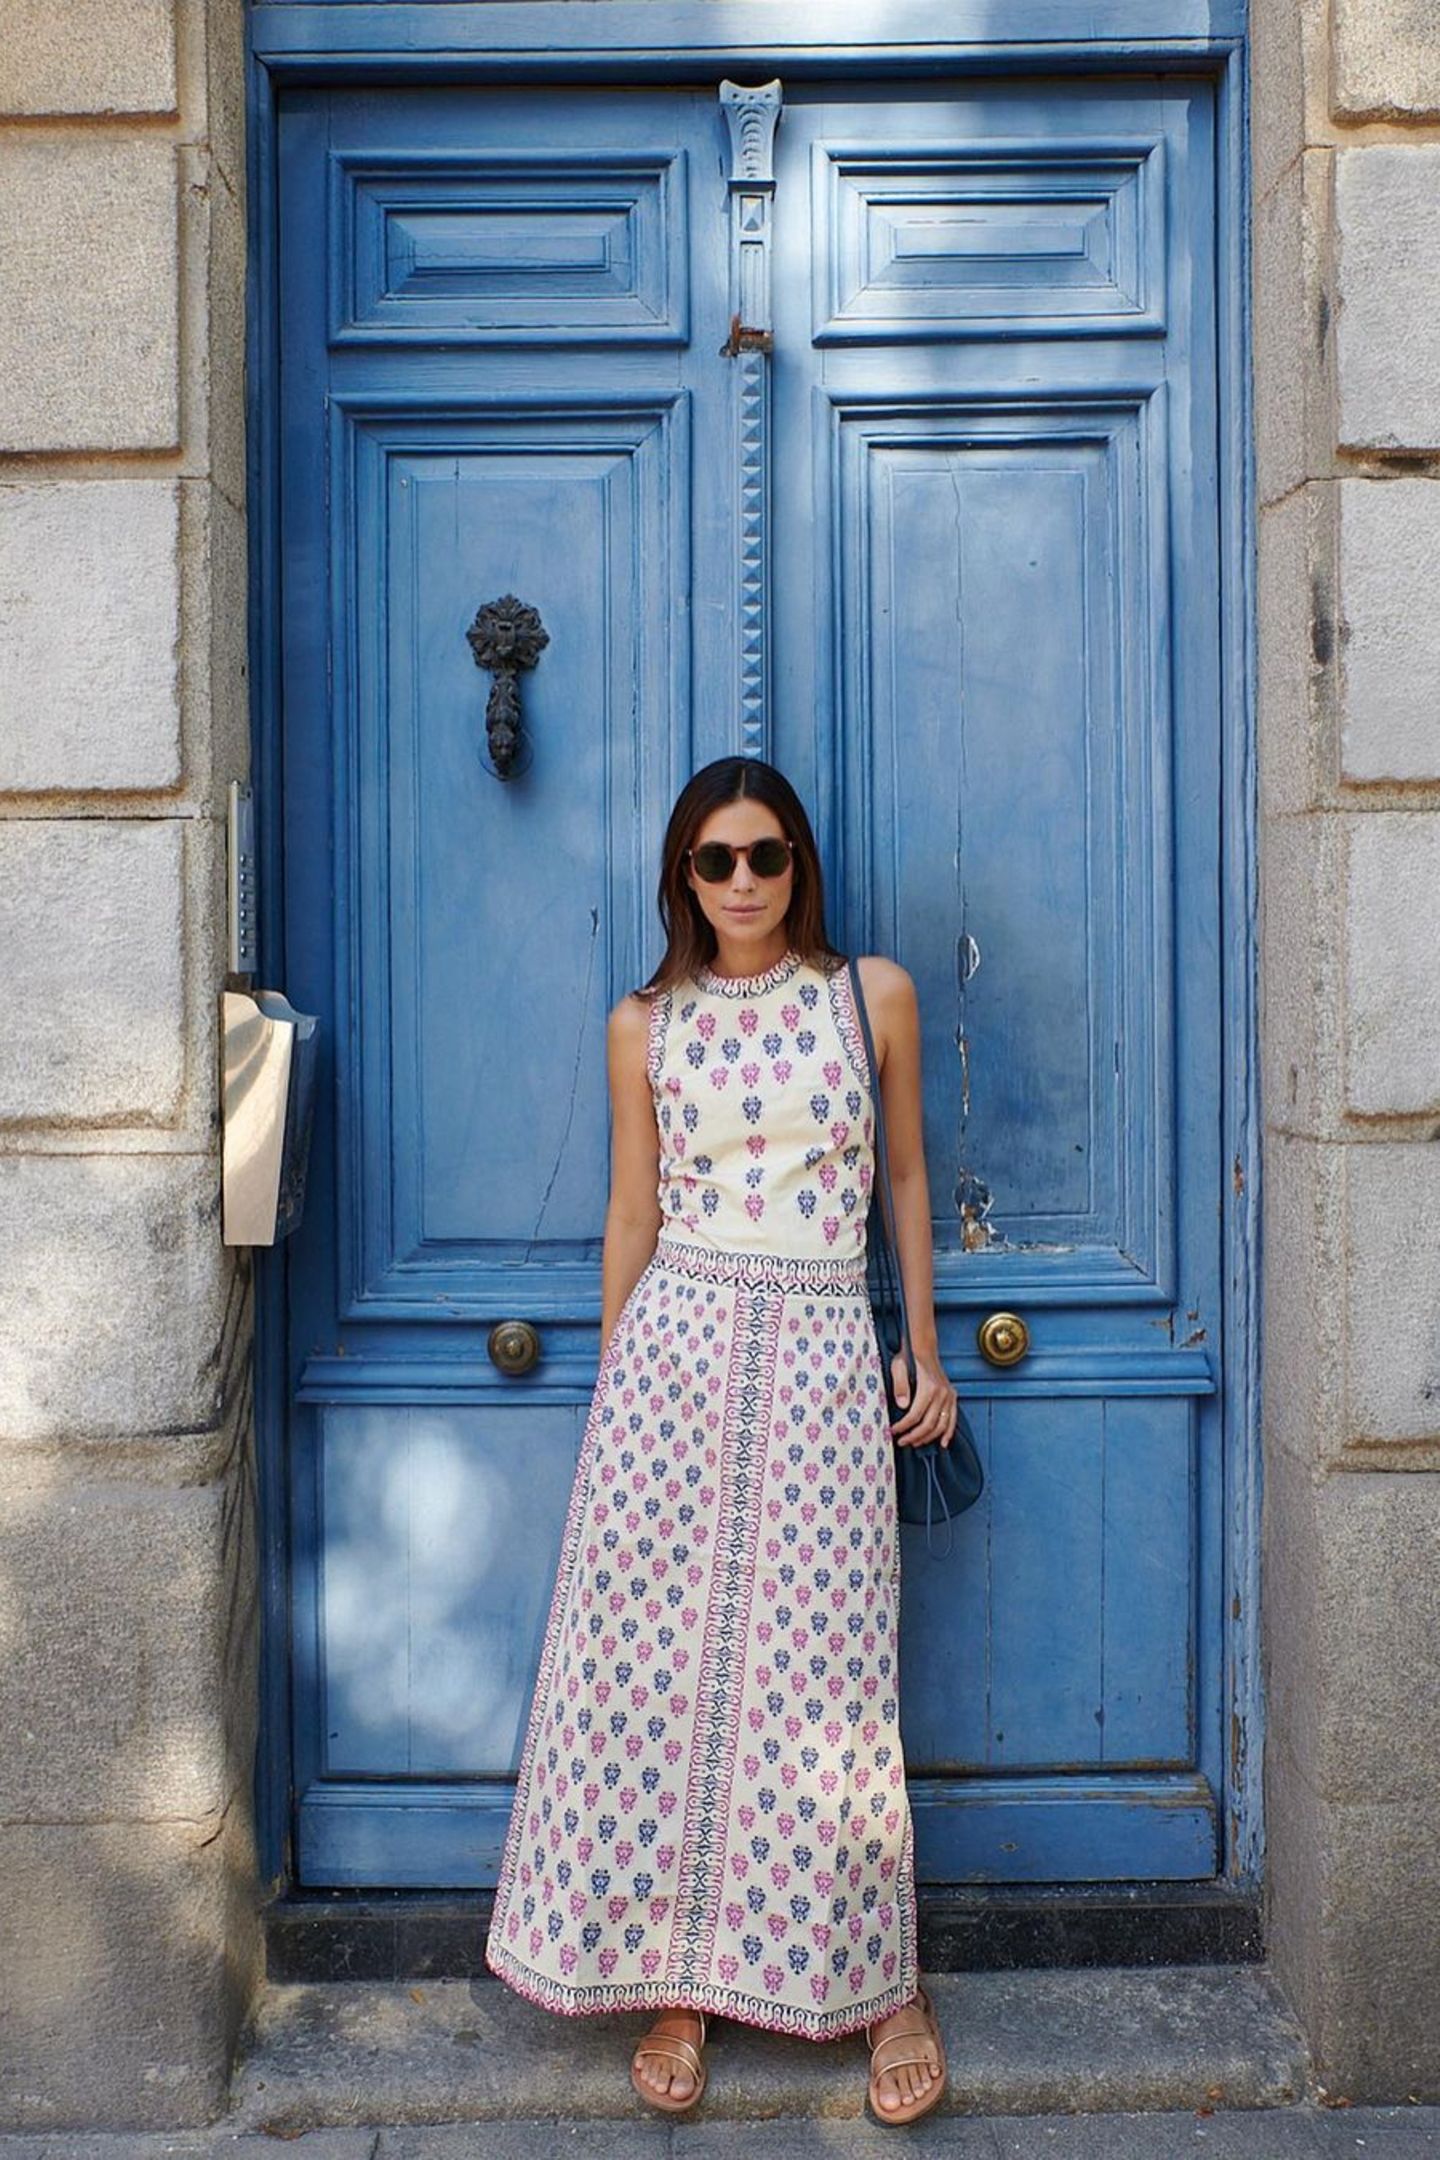 In einem Traum-Kleid posiert Alessandra de Osma vor einem blauen Hauseingang. Der Kontrast zu dem Hintergrund lässt das Kleid noch besser wirken. Das weiße Maxikleid ist verziert in einem abwechselndem Muster aus Pink und Blau. Das einzigartige Outfit kombiniert sie mit schlichten Sandalen und einer dunkelblauen Tasche. Wenn der Look mal nicht nach Urlaub schreit! 